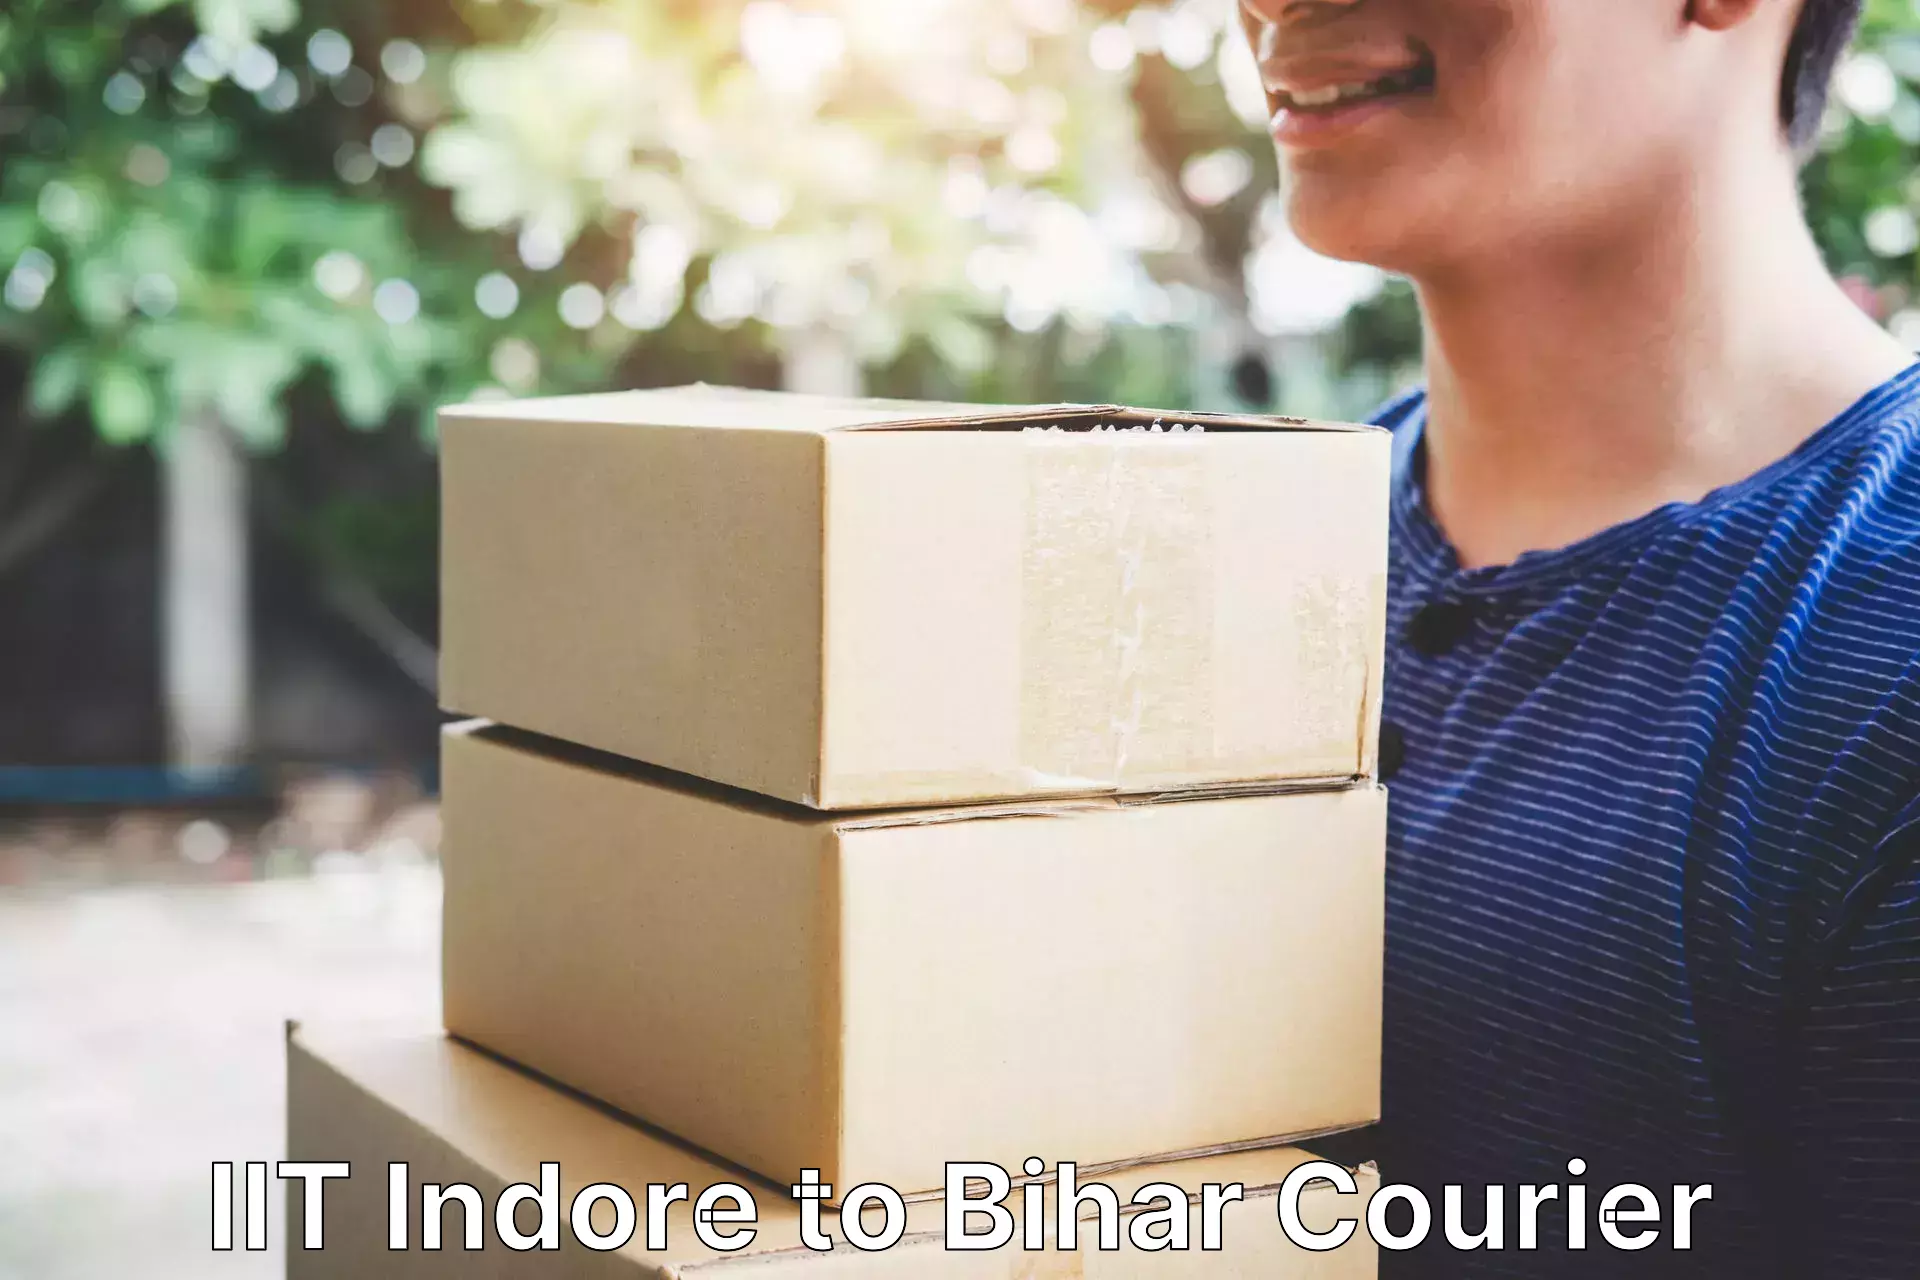 Courier insurance IIT Indore to Bihar